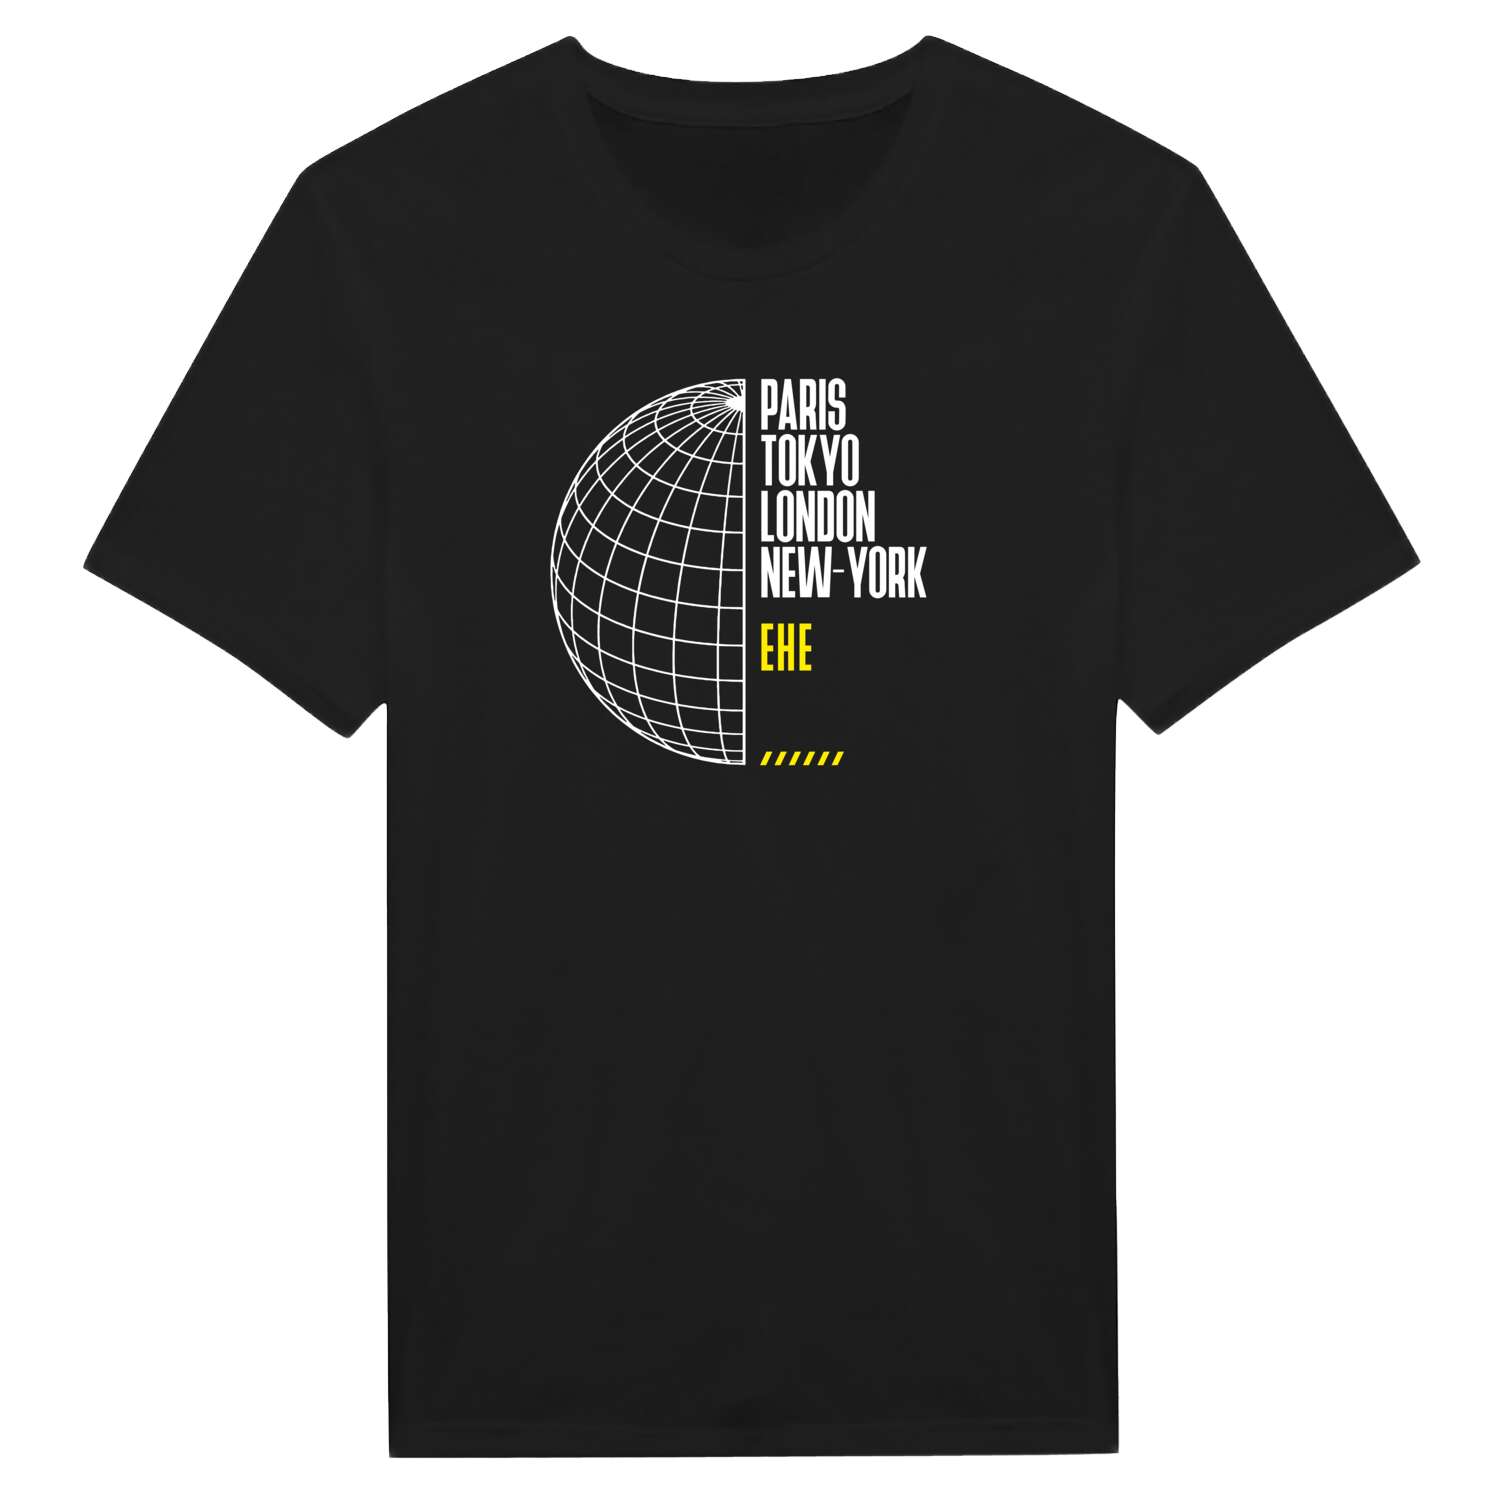 Ehe T-Shirt »Paris Tokyo London«